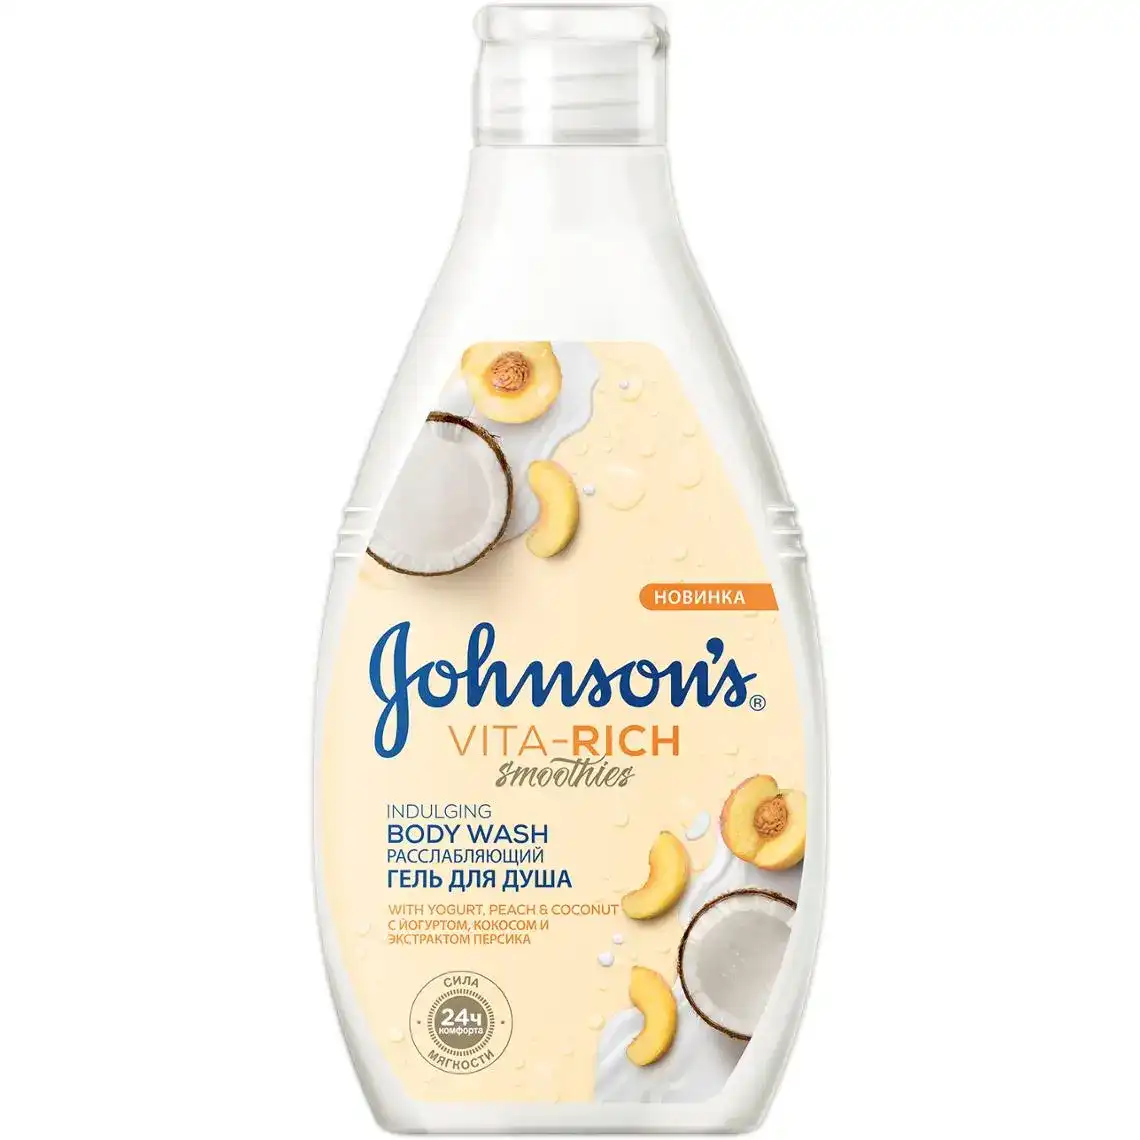 Гель для душа Johnson's Vita-Rich Smoothies розслабляючий з йогуртом, кокосом та екстрактом персика 250 мл